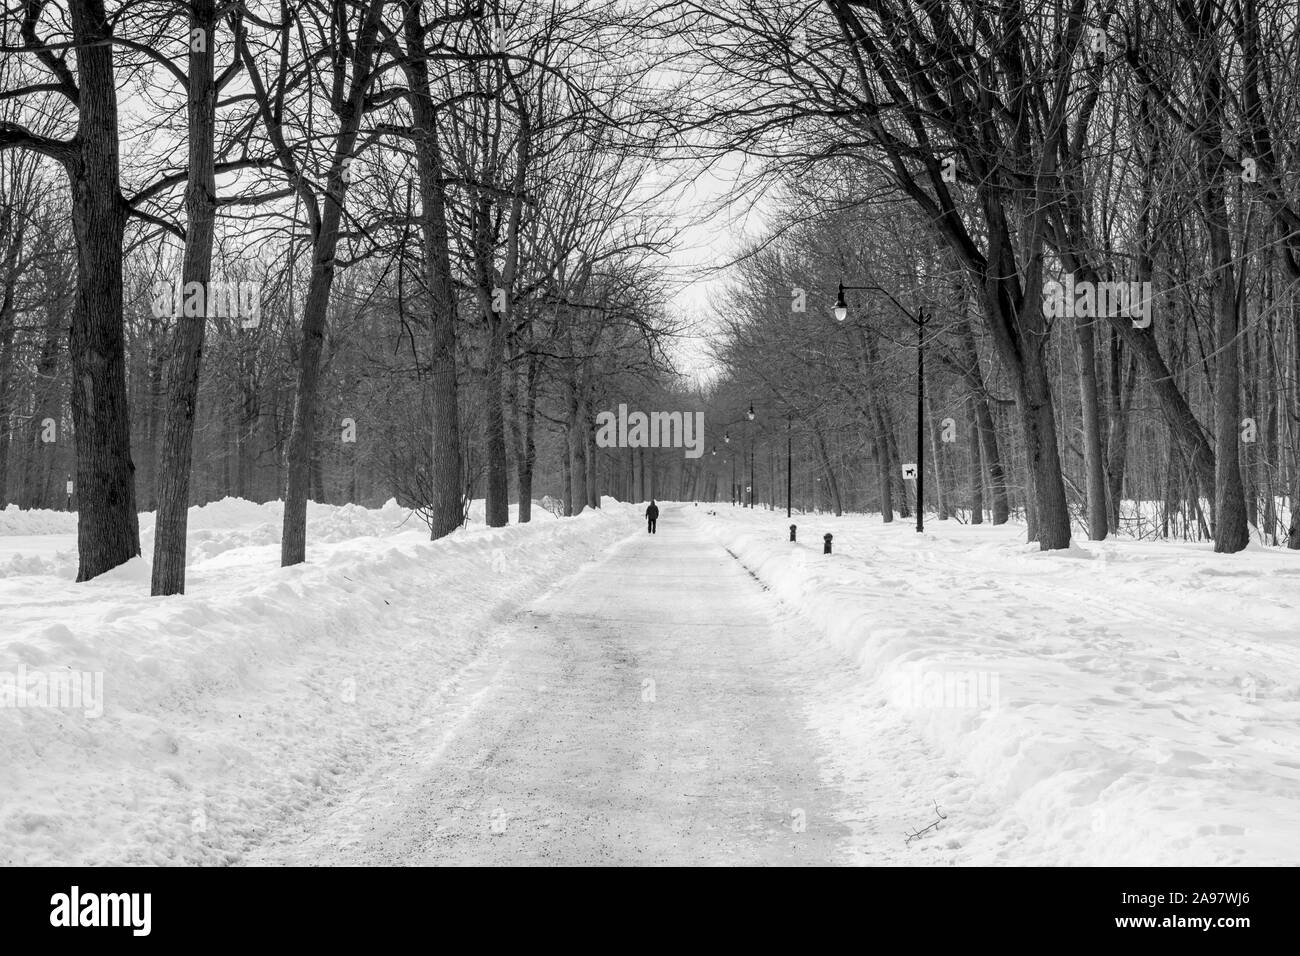 Seule personne qui marche dans la neige. Le Parc Angrignon (Montréal) Banque D'Images